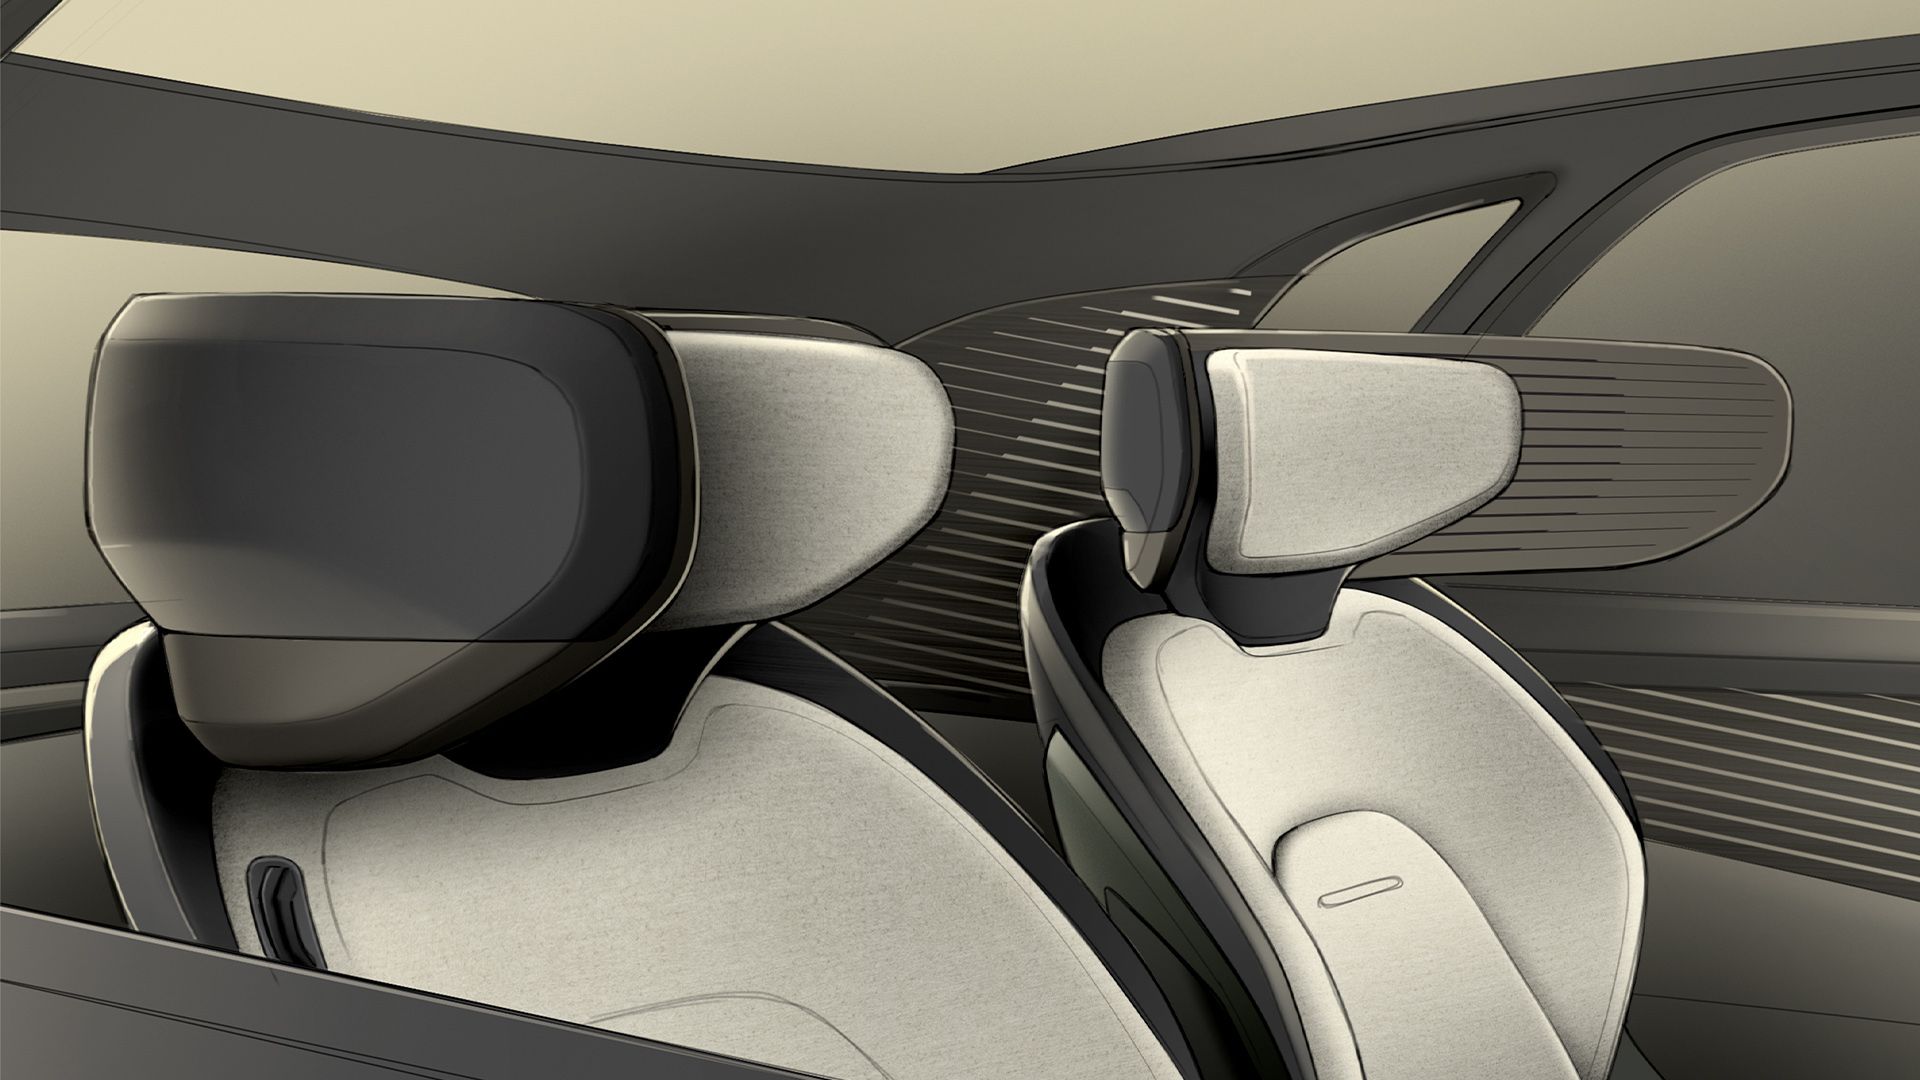 Die digitale Skizze zeigt die Kragenelemente der Autositze im Fahrzeug, mit denen die Sitze voneinander abgeschirmt sind.